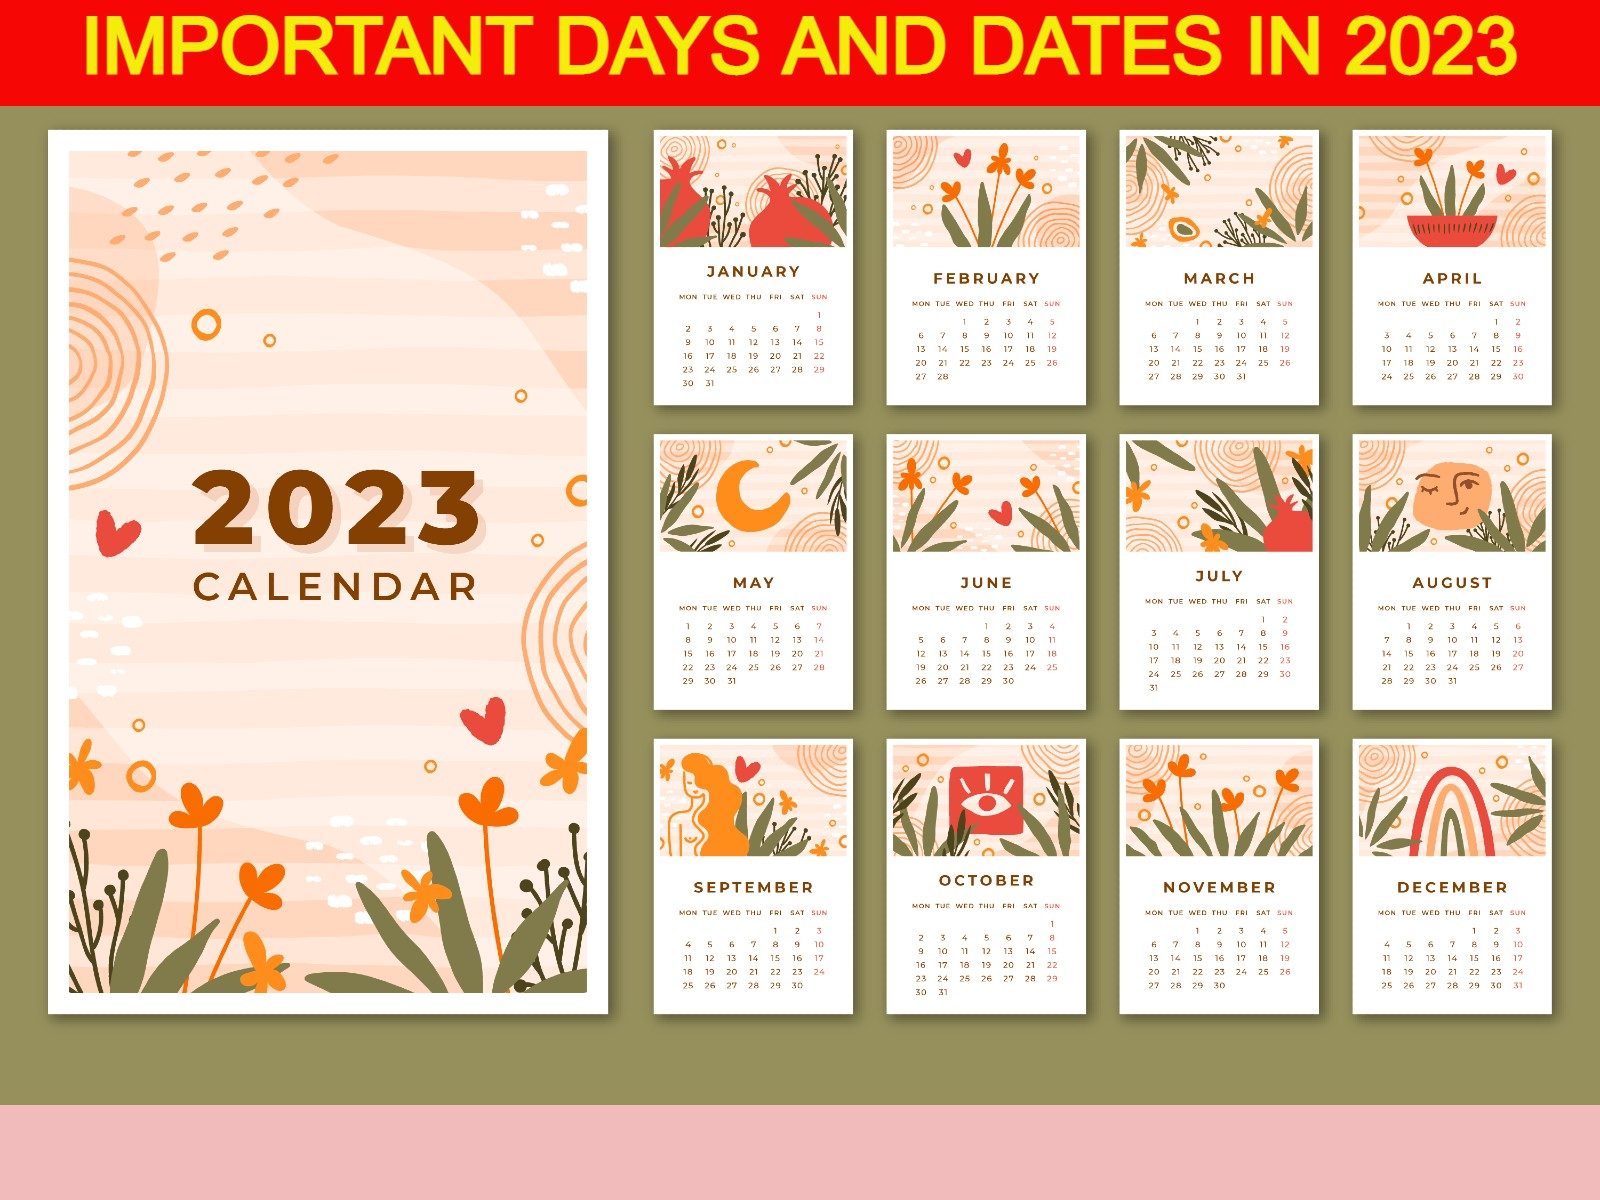 October 2023 Calendar Special Days Get Calendar 2023 Update